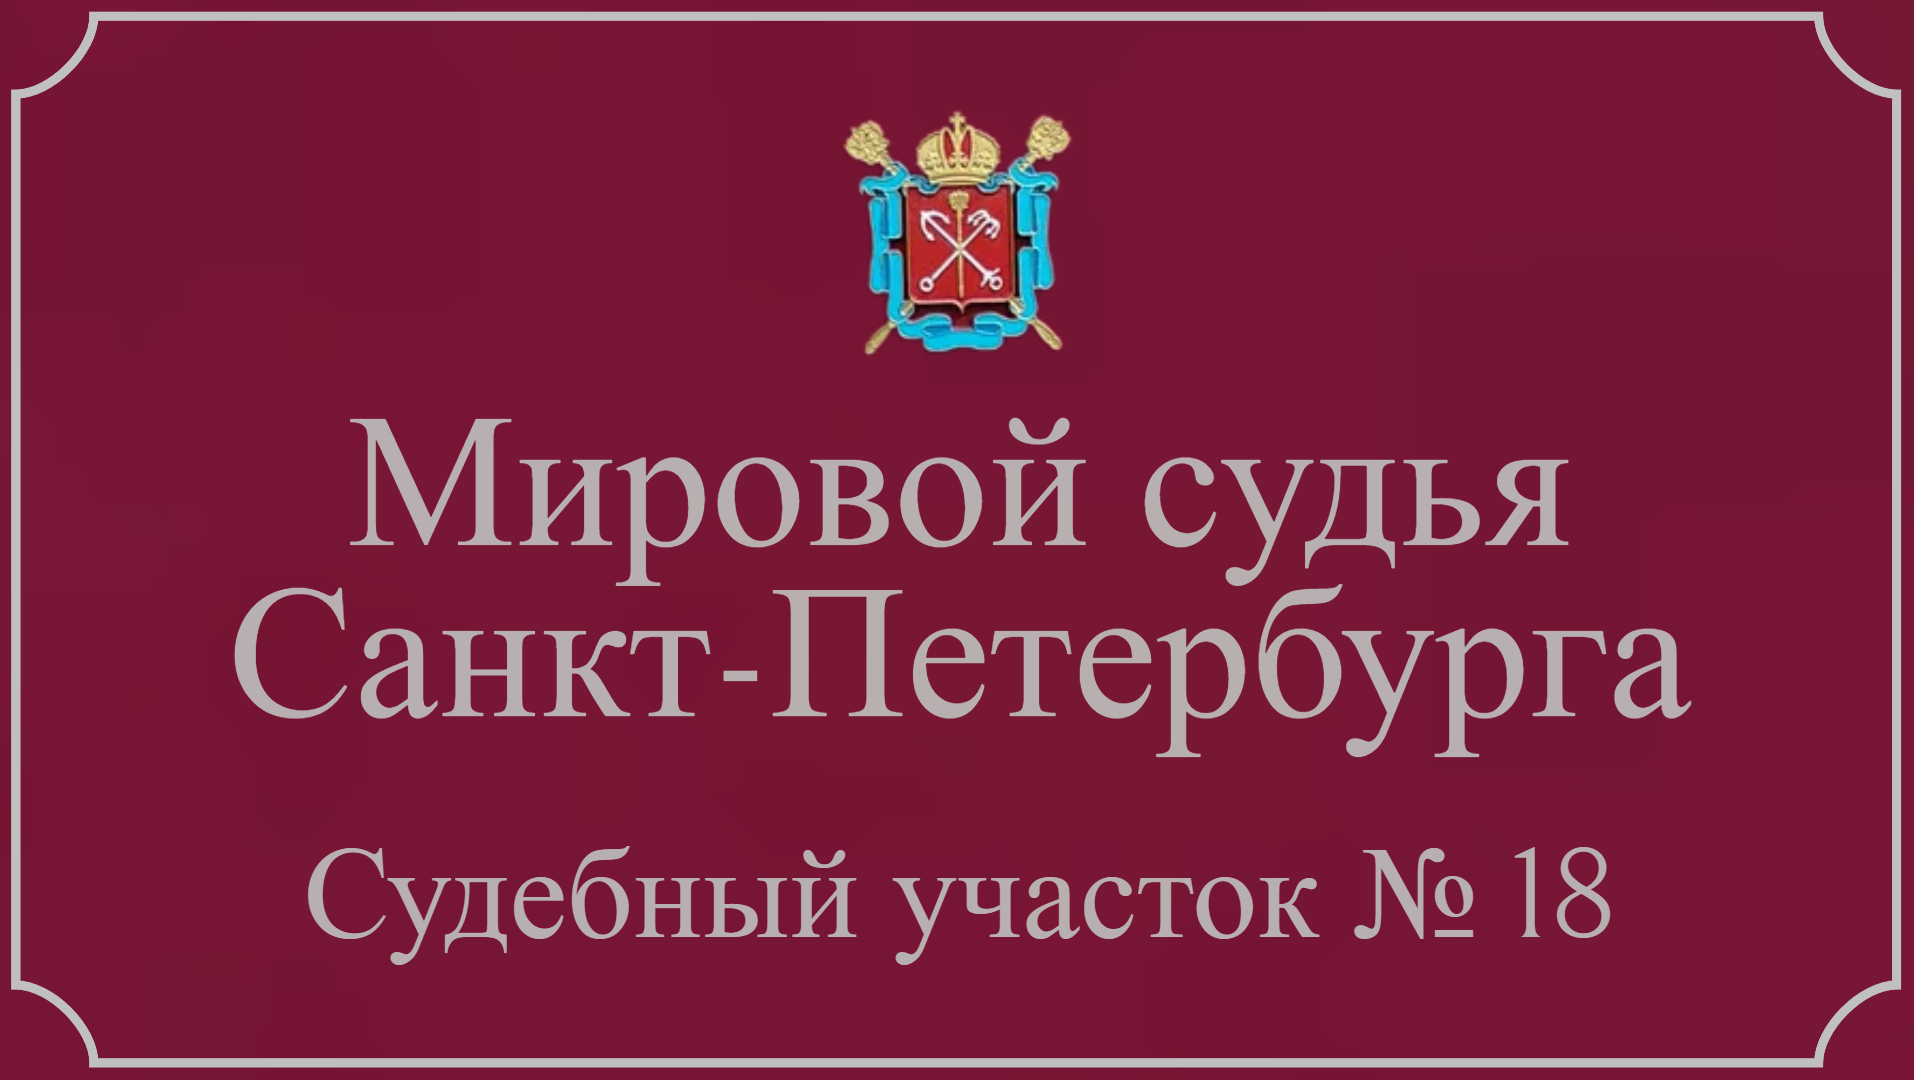 Информация по 18 судебному участку в Санкт-Петербурге.